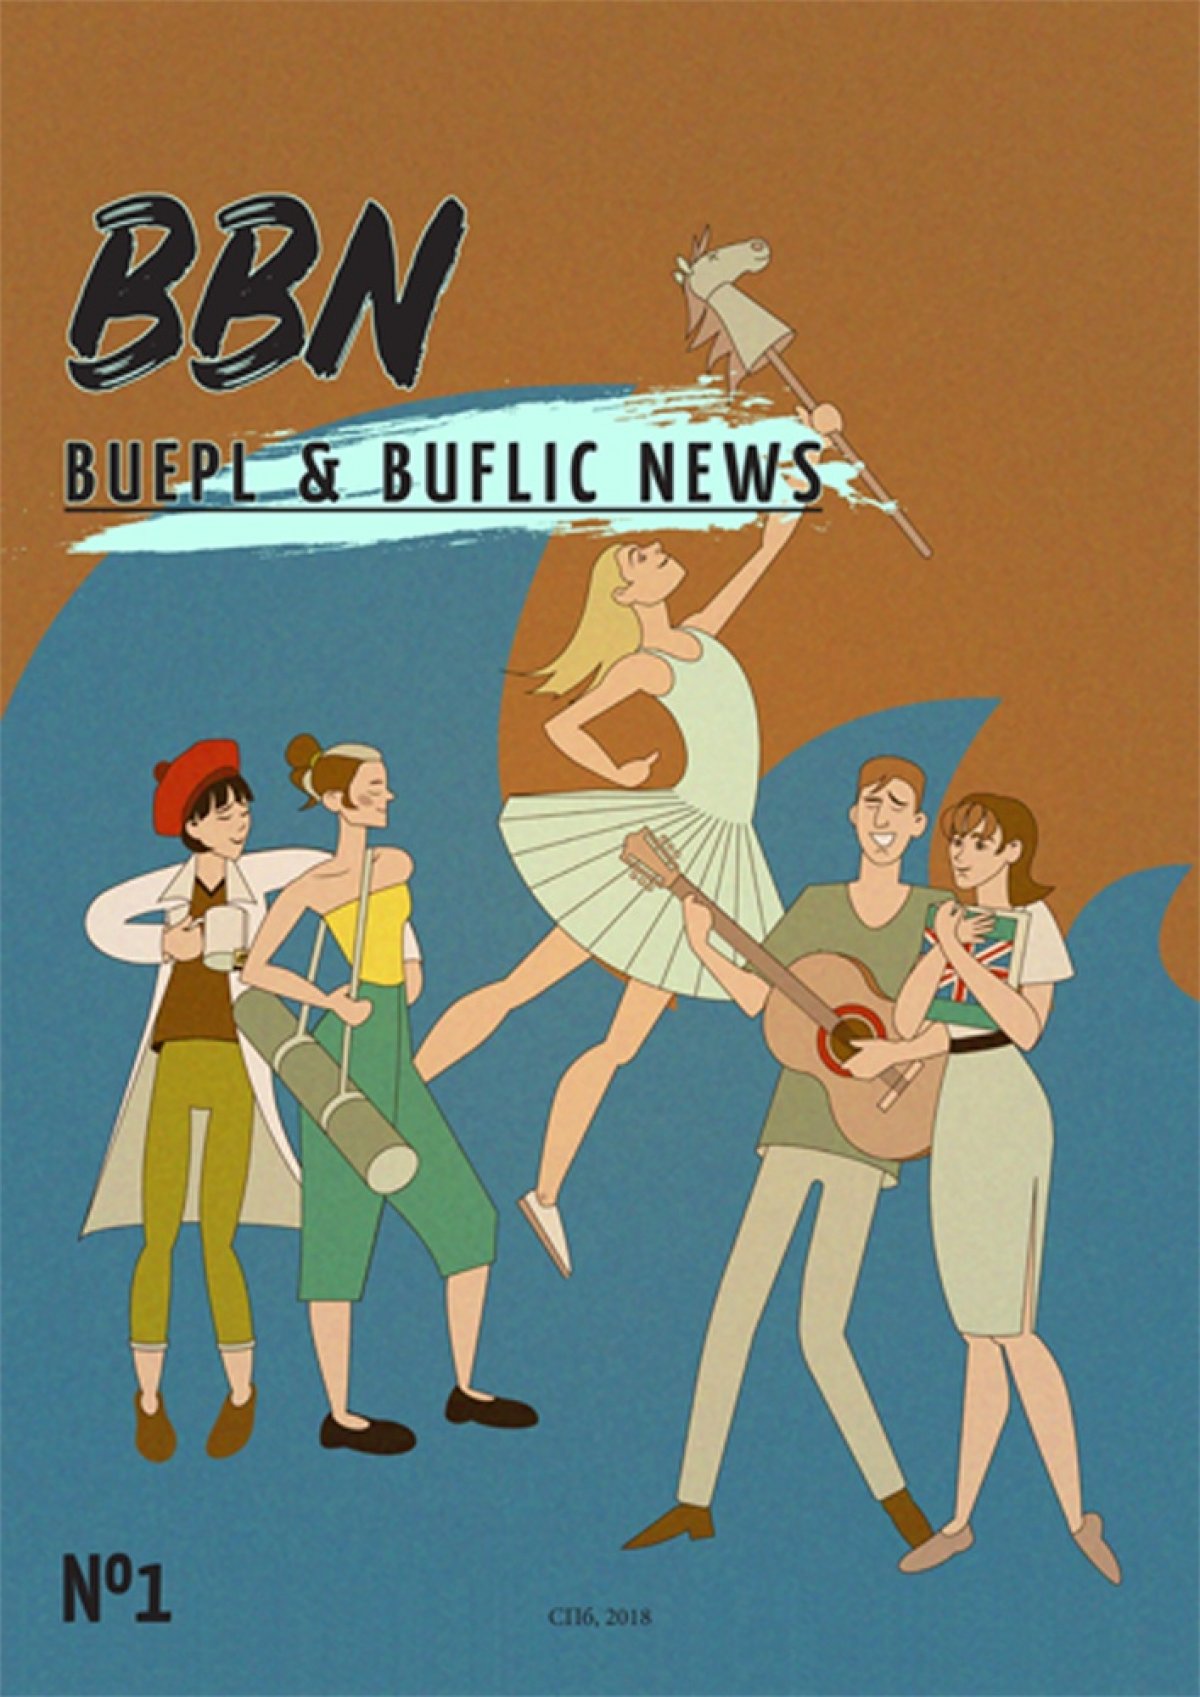 Студенческий журнал BBN (BUEPL & BUFLIC NEWS). Выпуск №1!